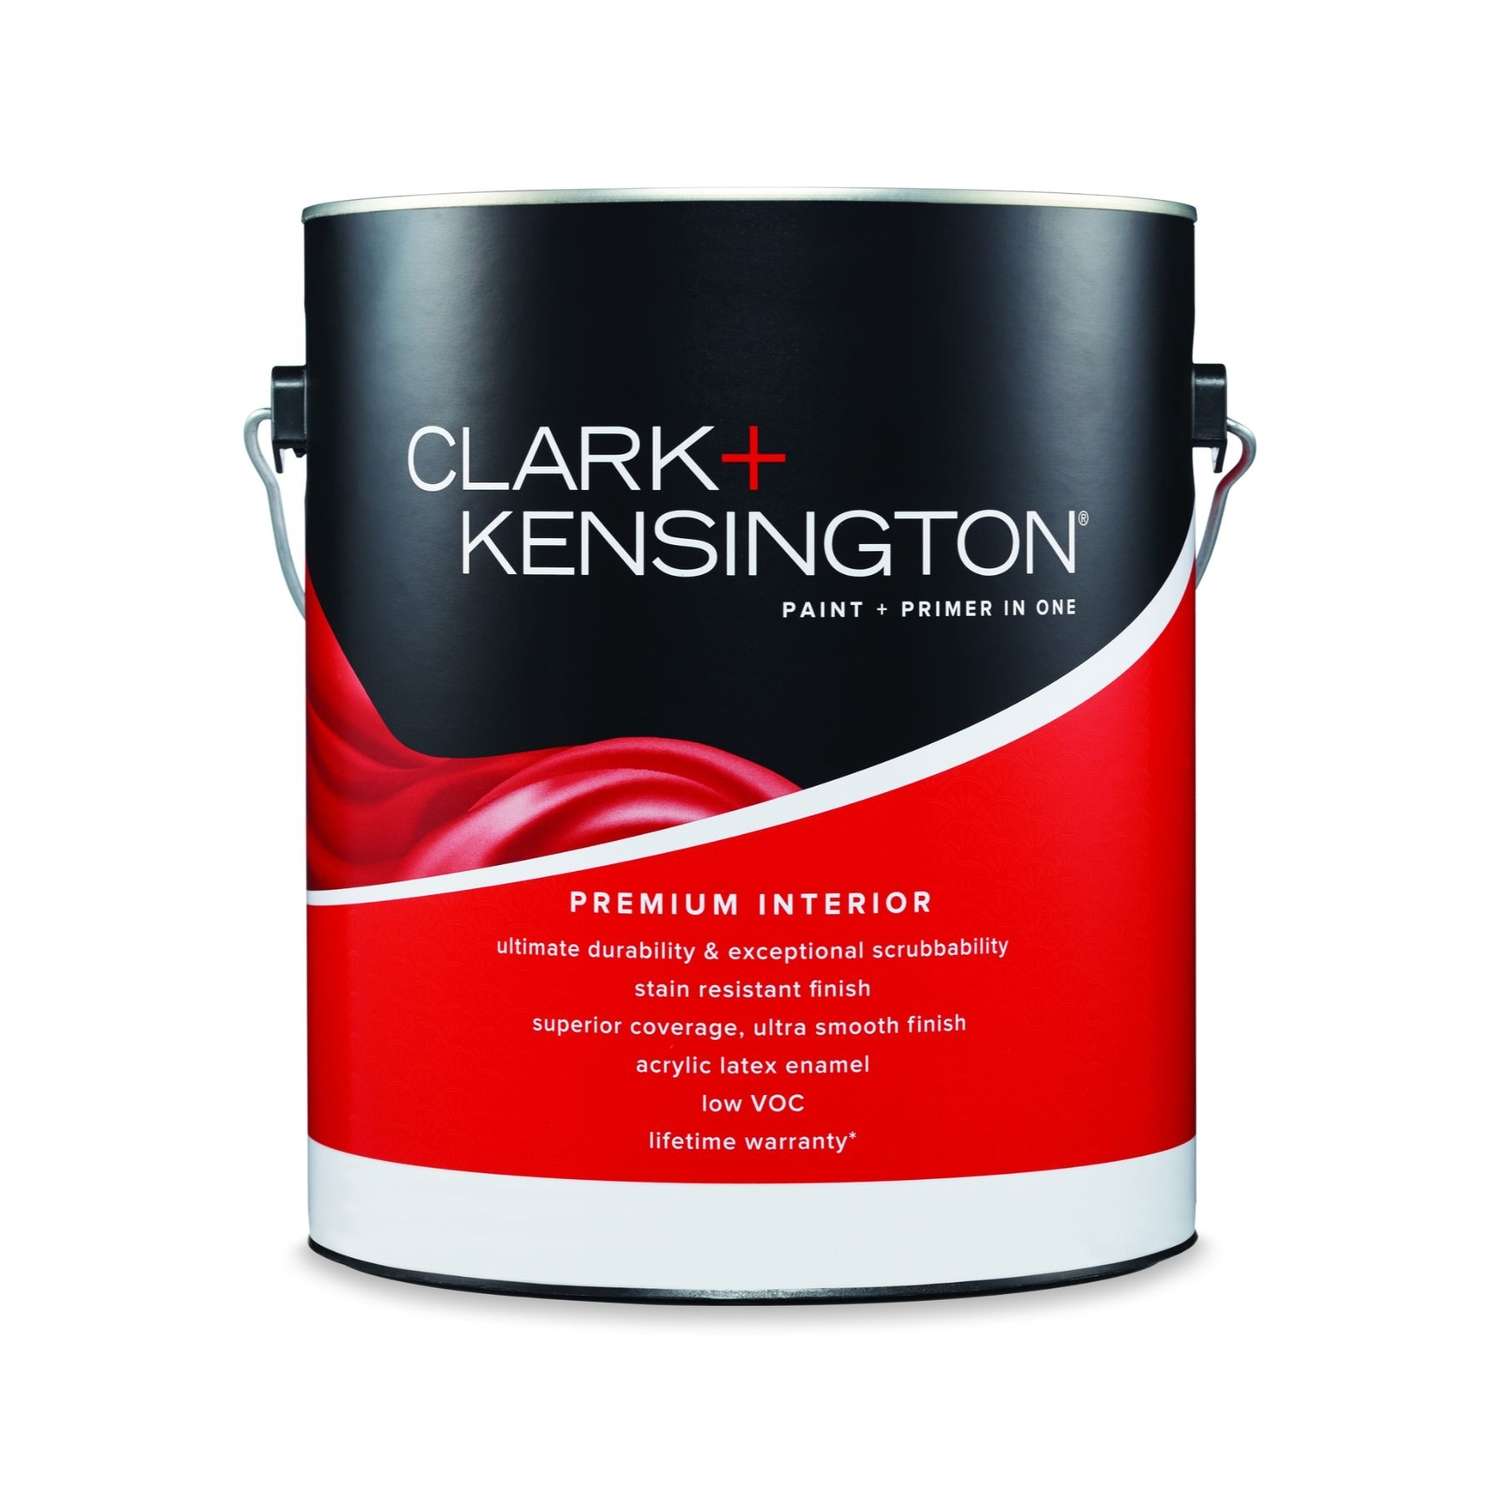 Clark+Kensington Flat Tint Base Neutral Base Premium Paint